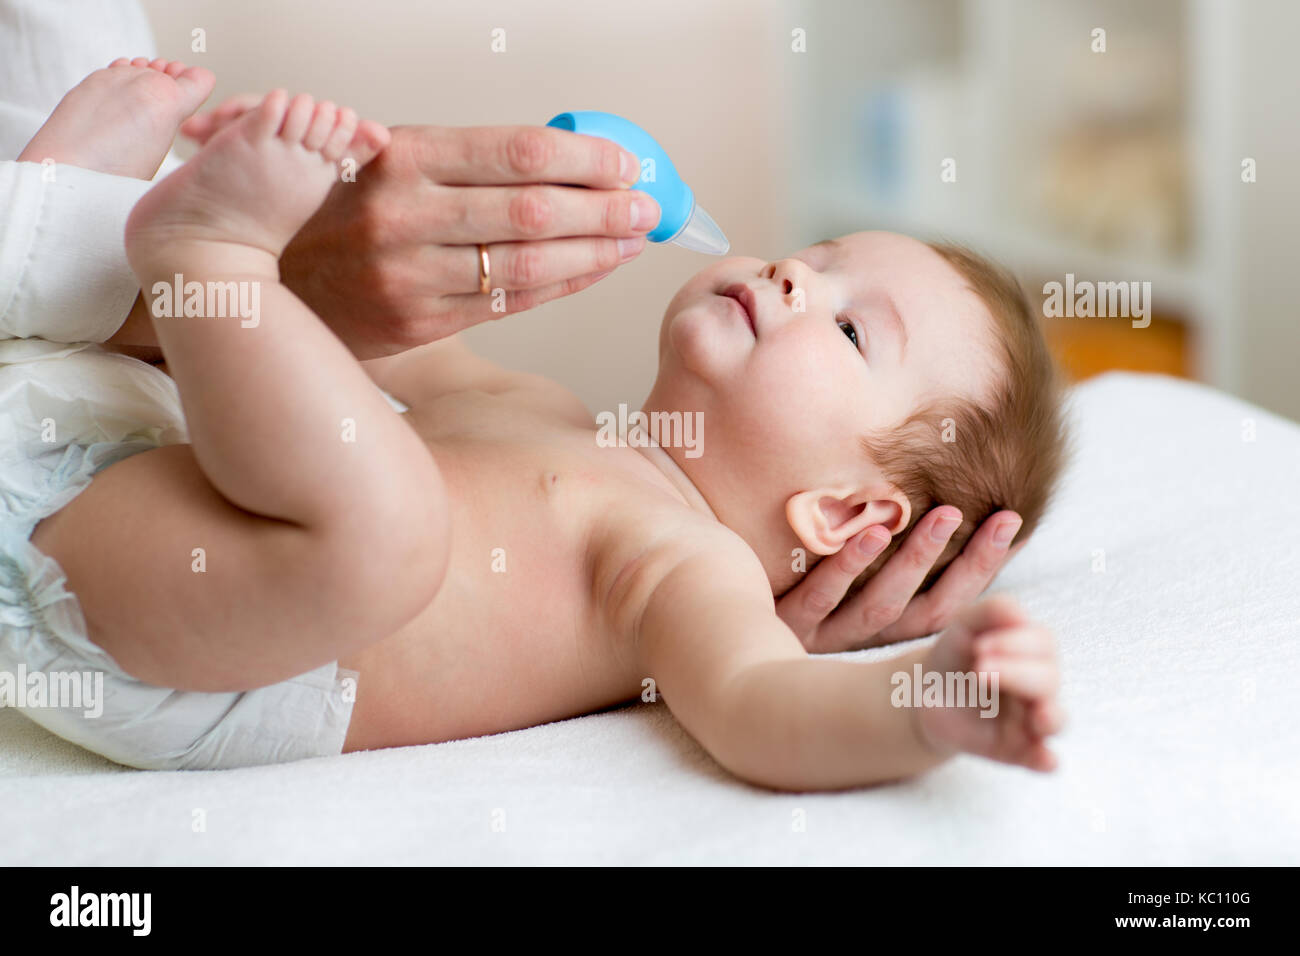 Mutter oder Arzt reinigt Babys Nase mit Gebläse, während Kind tot liegt und lächelnd. Stockfoto